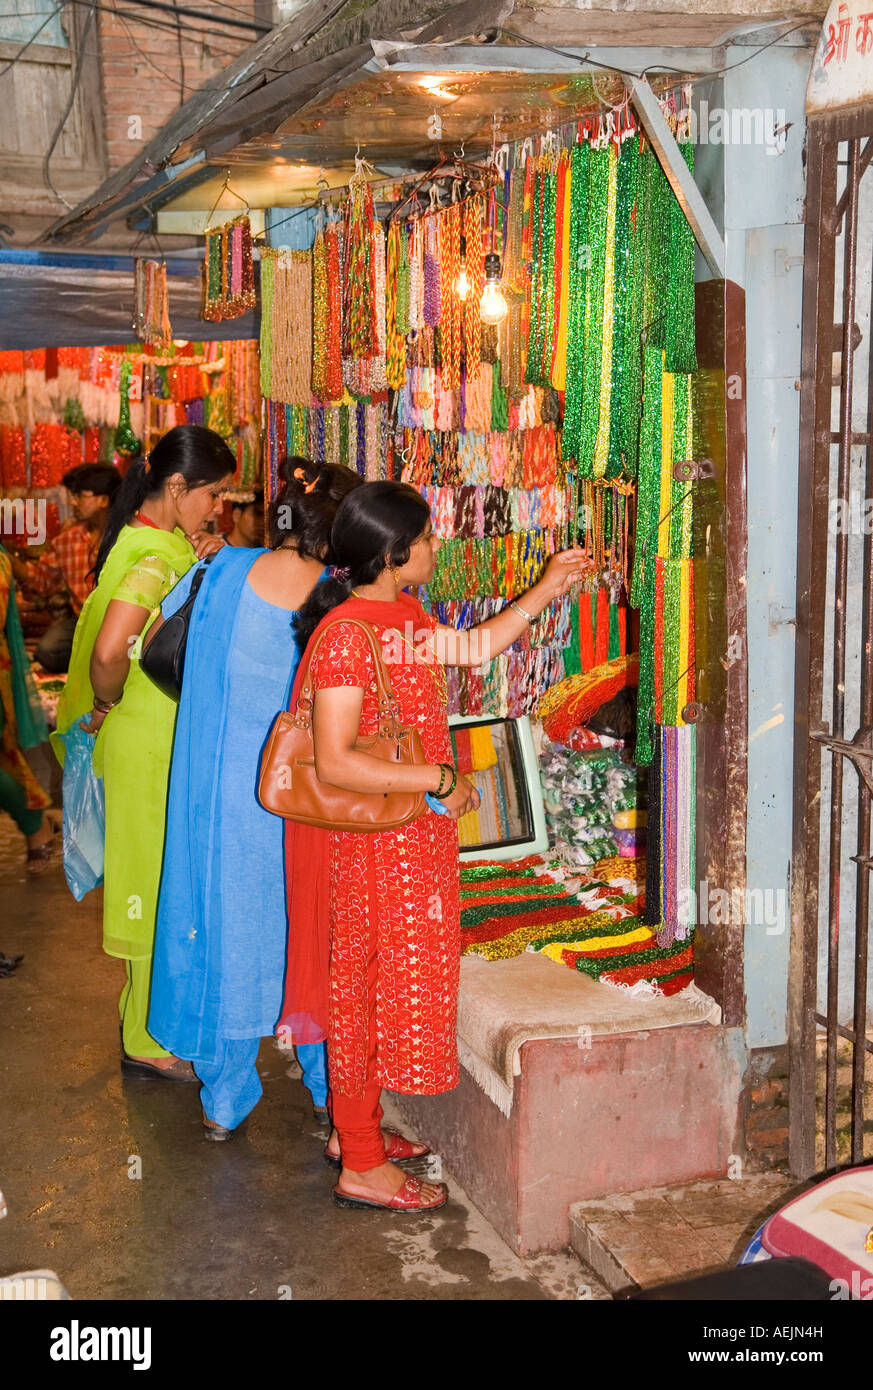 Woman in a Sari buys jewelery, Kathmandu, Nepal Stock Photo